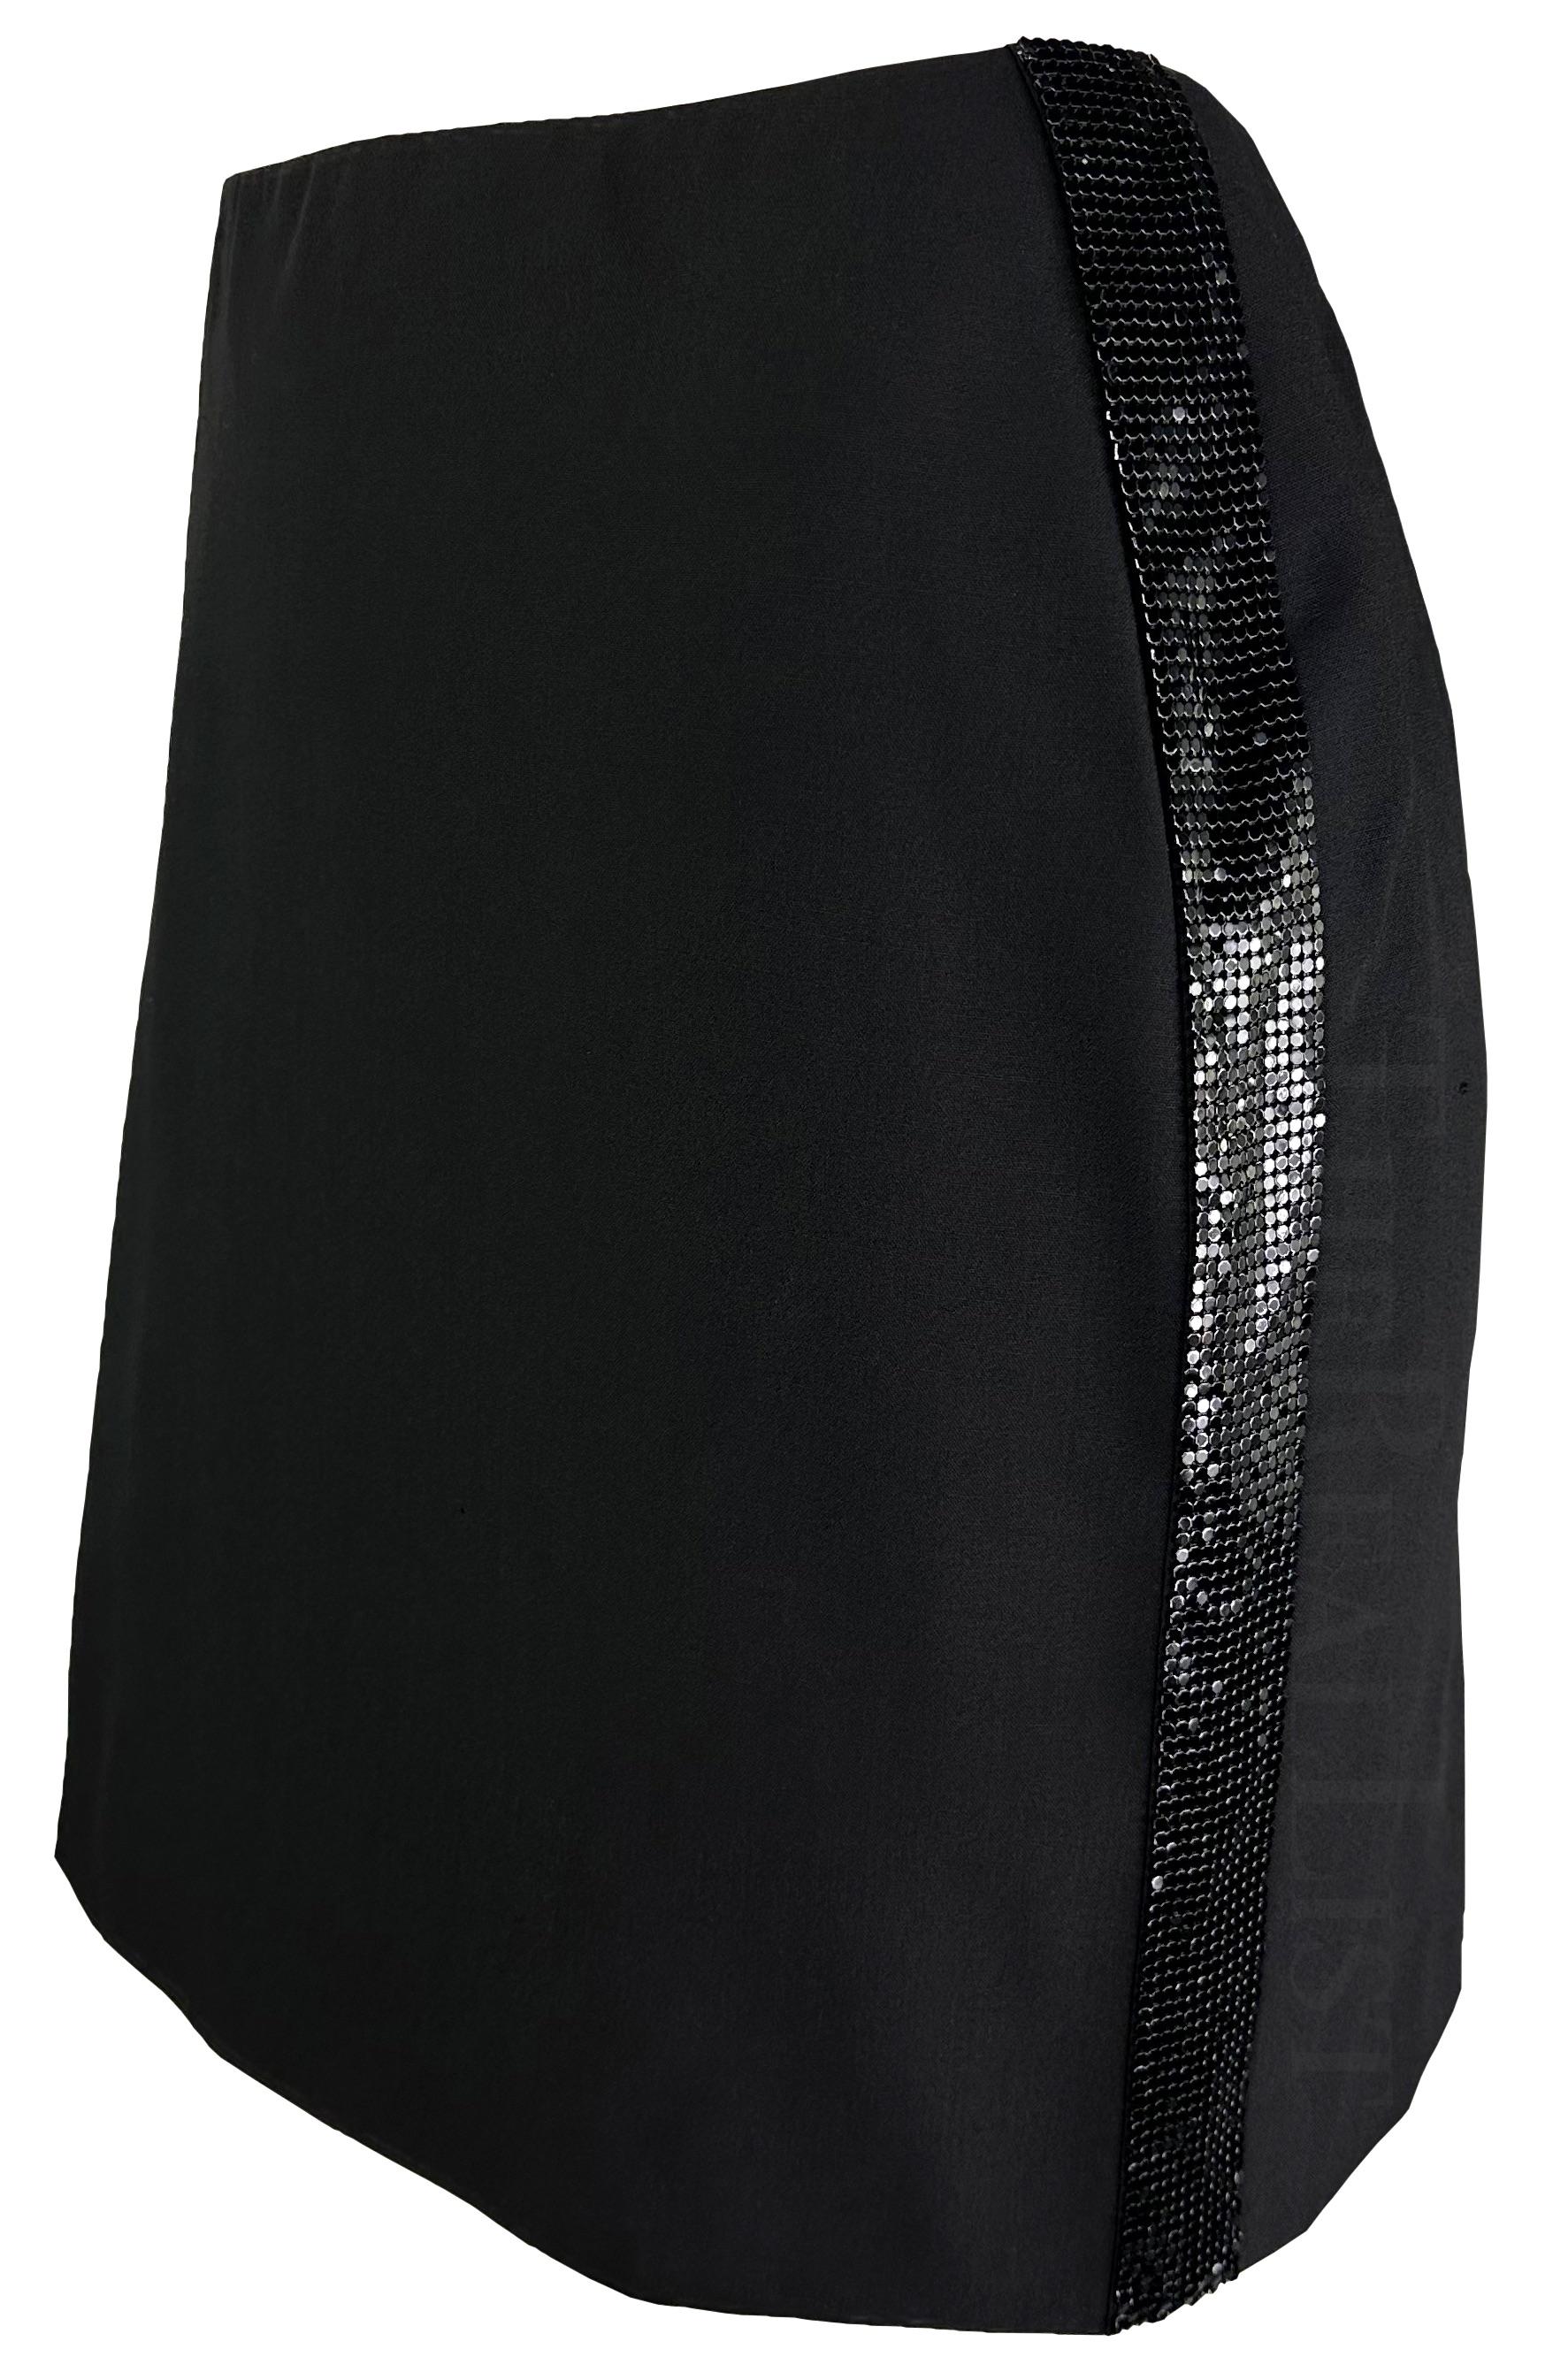 Présentation d'une mini-jupe noire chic de Gianni Versace, dessinée par Donatella Versace. Datant de la fin des années 1990/début des années 2000, cette jupe présente l'emblématique cotte de mailles Oroton de la maison, brevetée par Gianni en 1982.